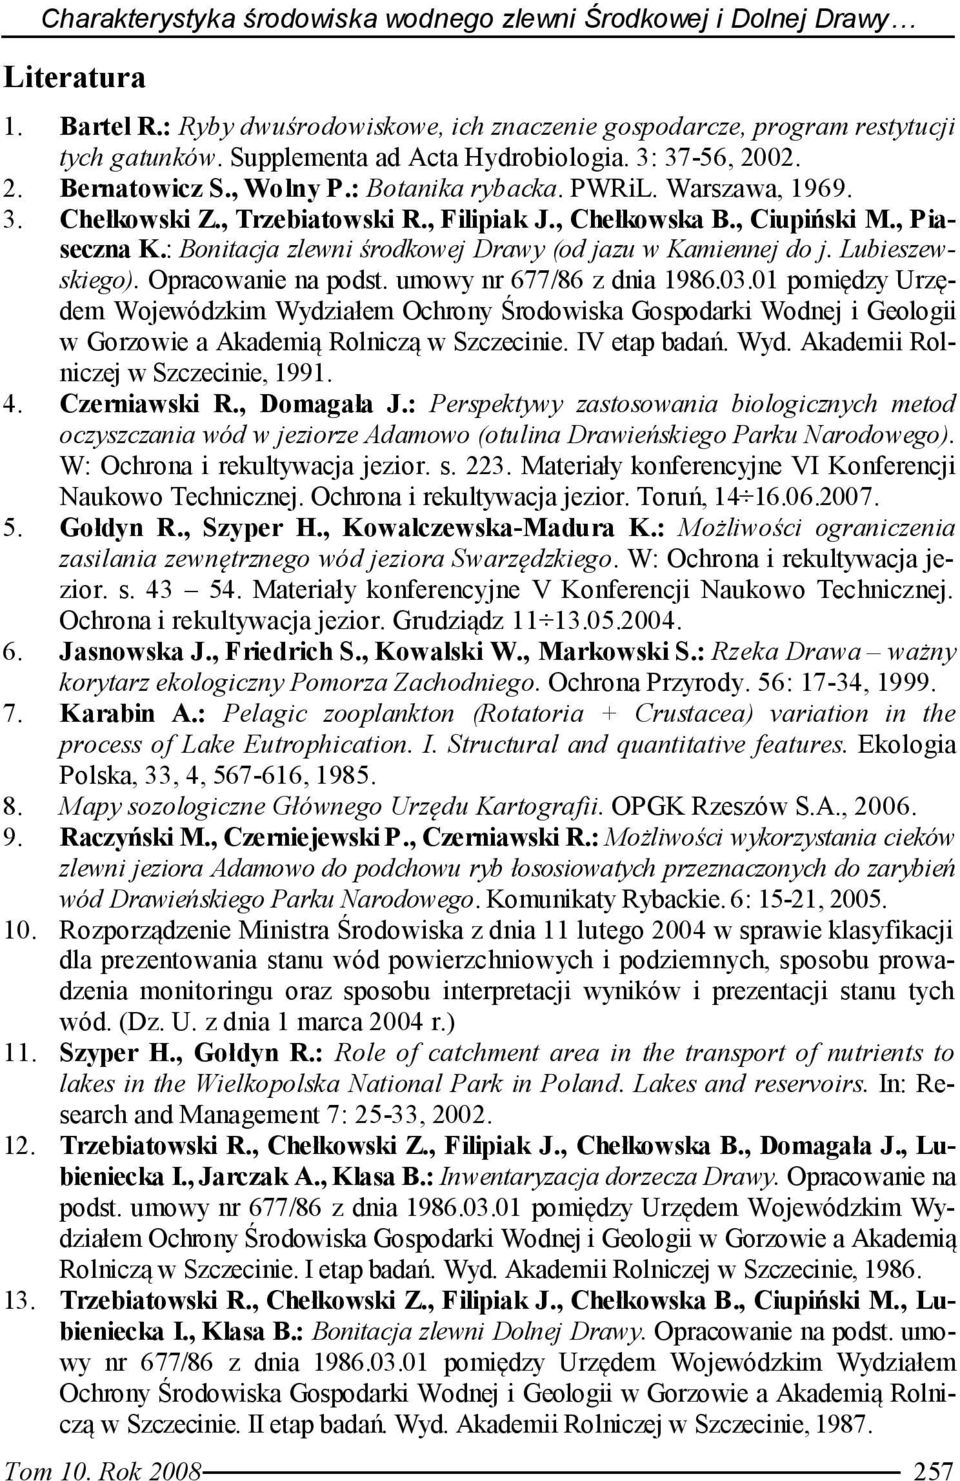 , Piaseczna K.: Bonitacja zlewni środkowej Drawy (od jazu w Kamiennej do j. Lubieszewskiego). Opracowanie na podst. umowy nr 677/86 z dnia 1986.03.